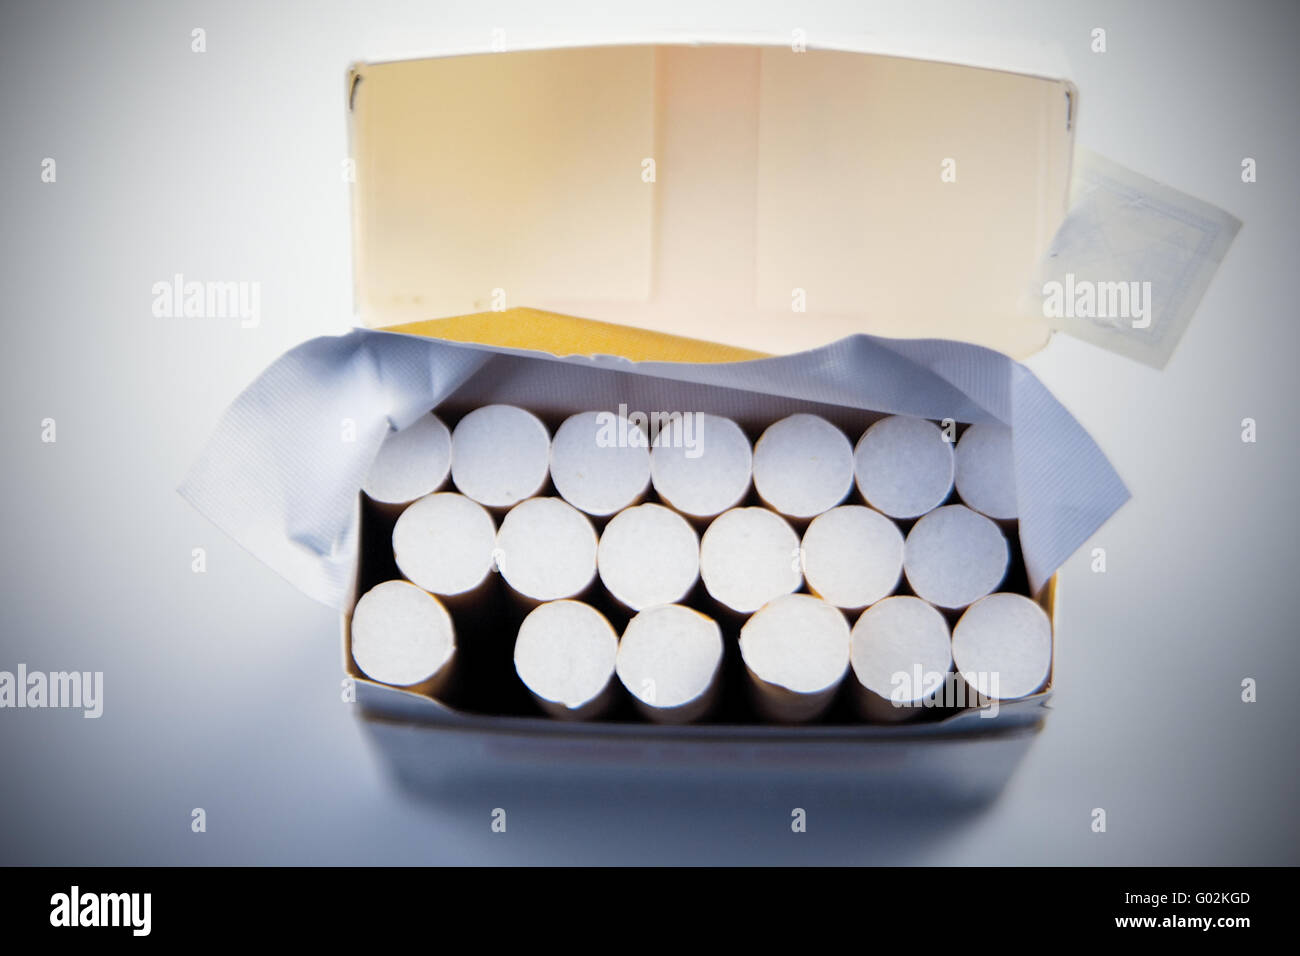 Öffnen Sie Zigaretten Karton Stockfoto